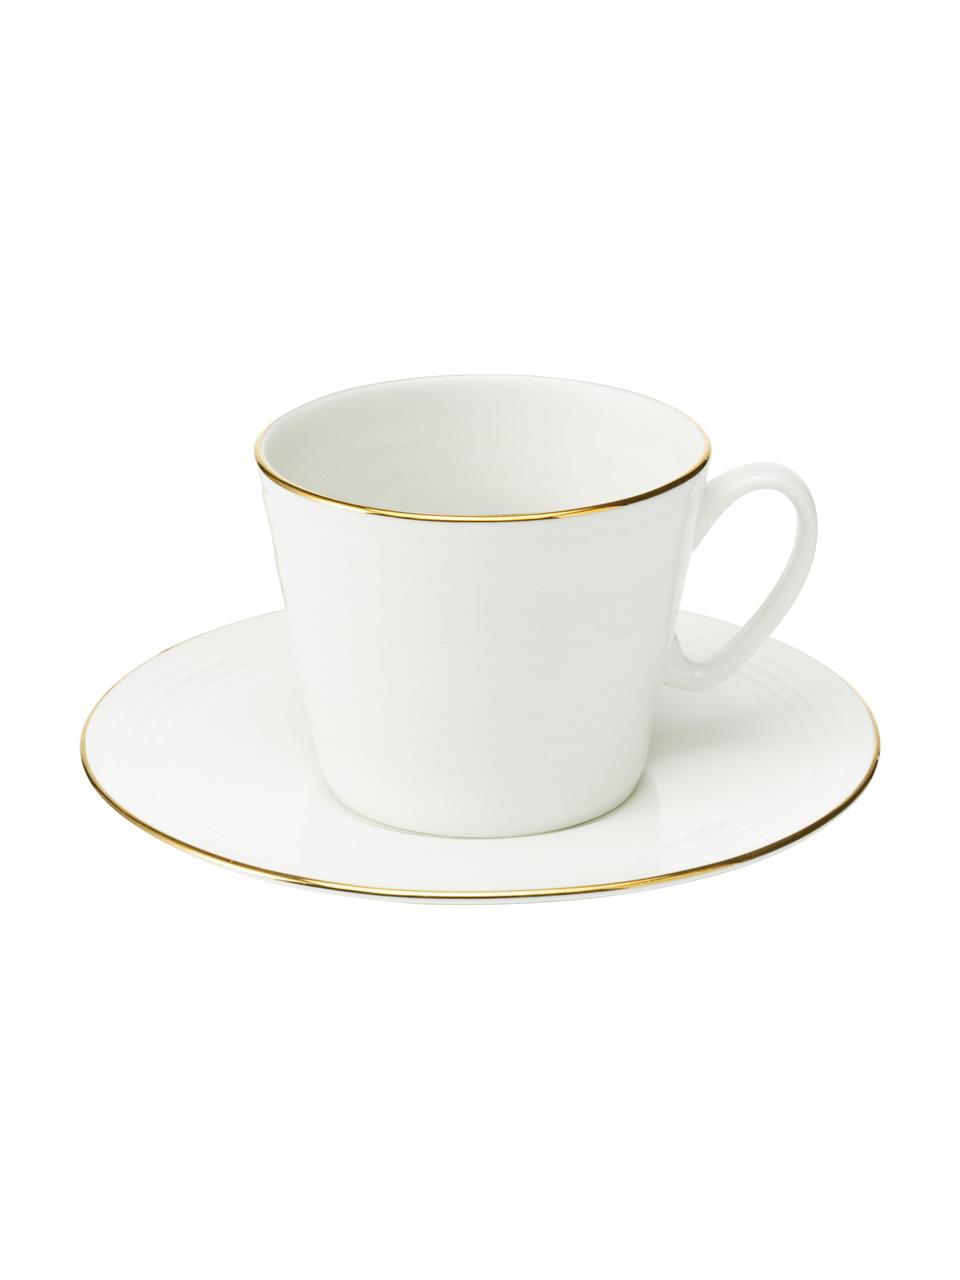 Kaffeetassen Cobald mit goldenem Rand und Rillenrelief, 4 Stück, Porzellan, Weiß, Goldfarben, Ø 9 x H 8 cm